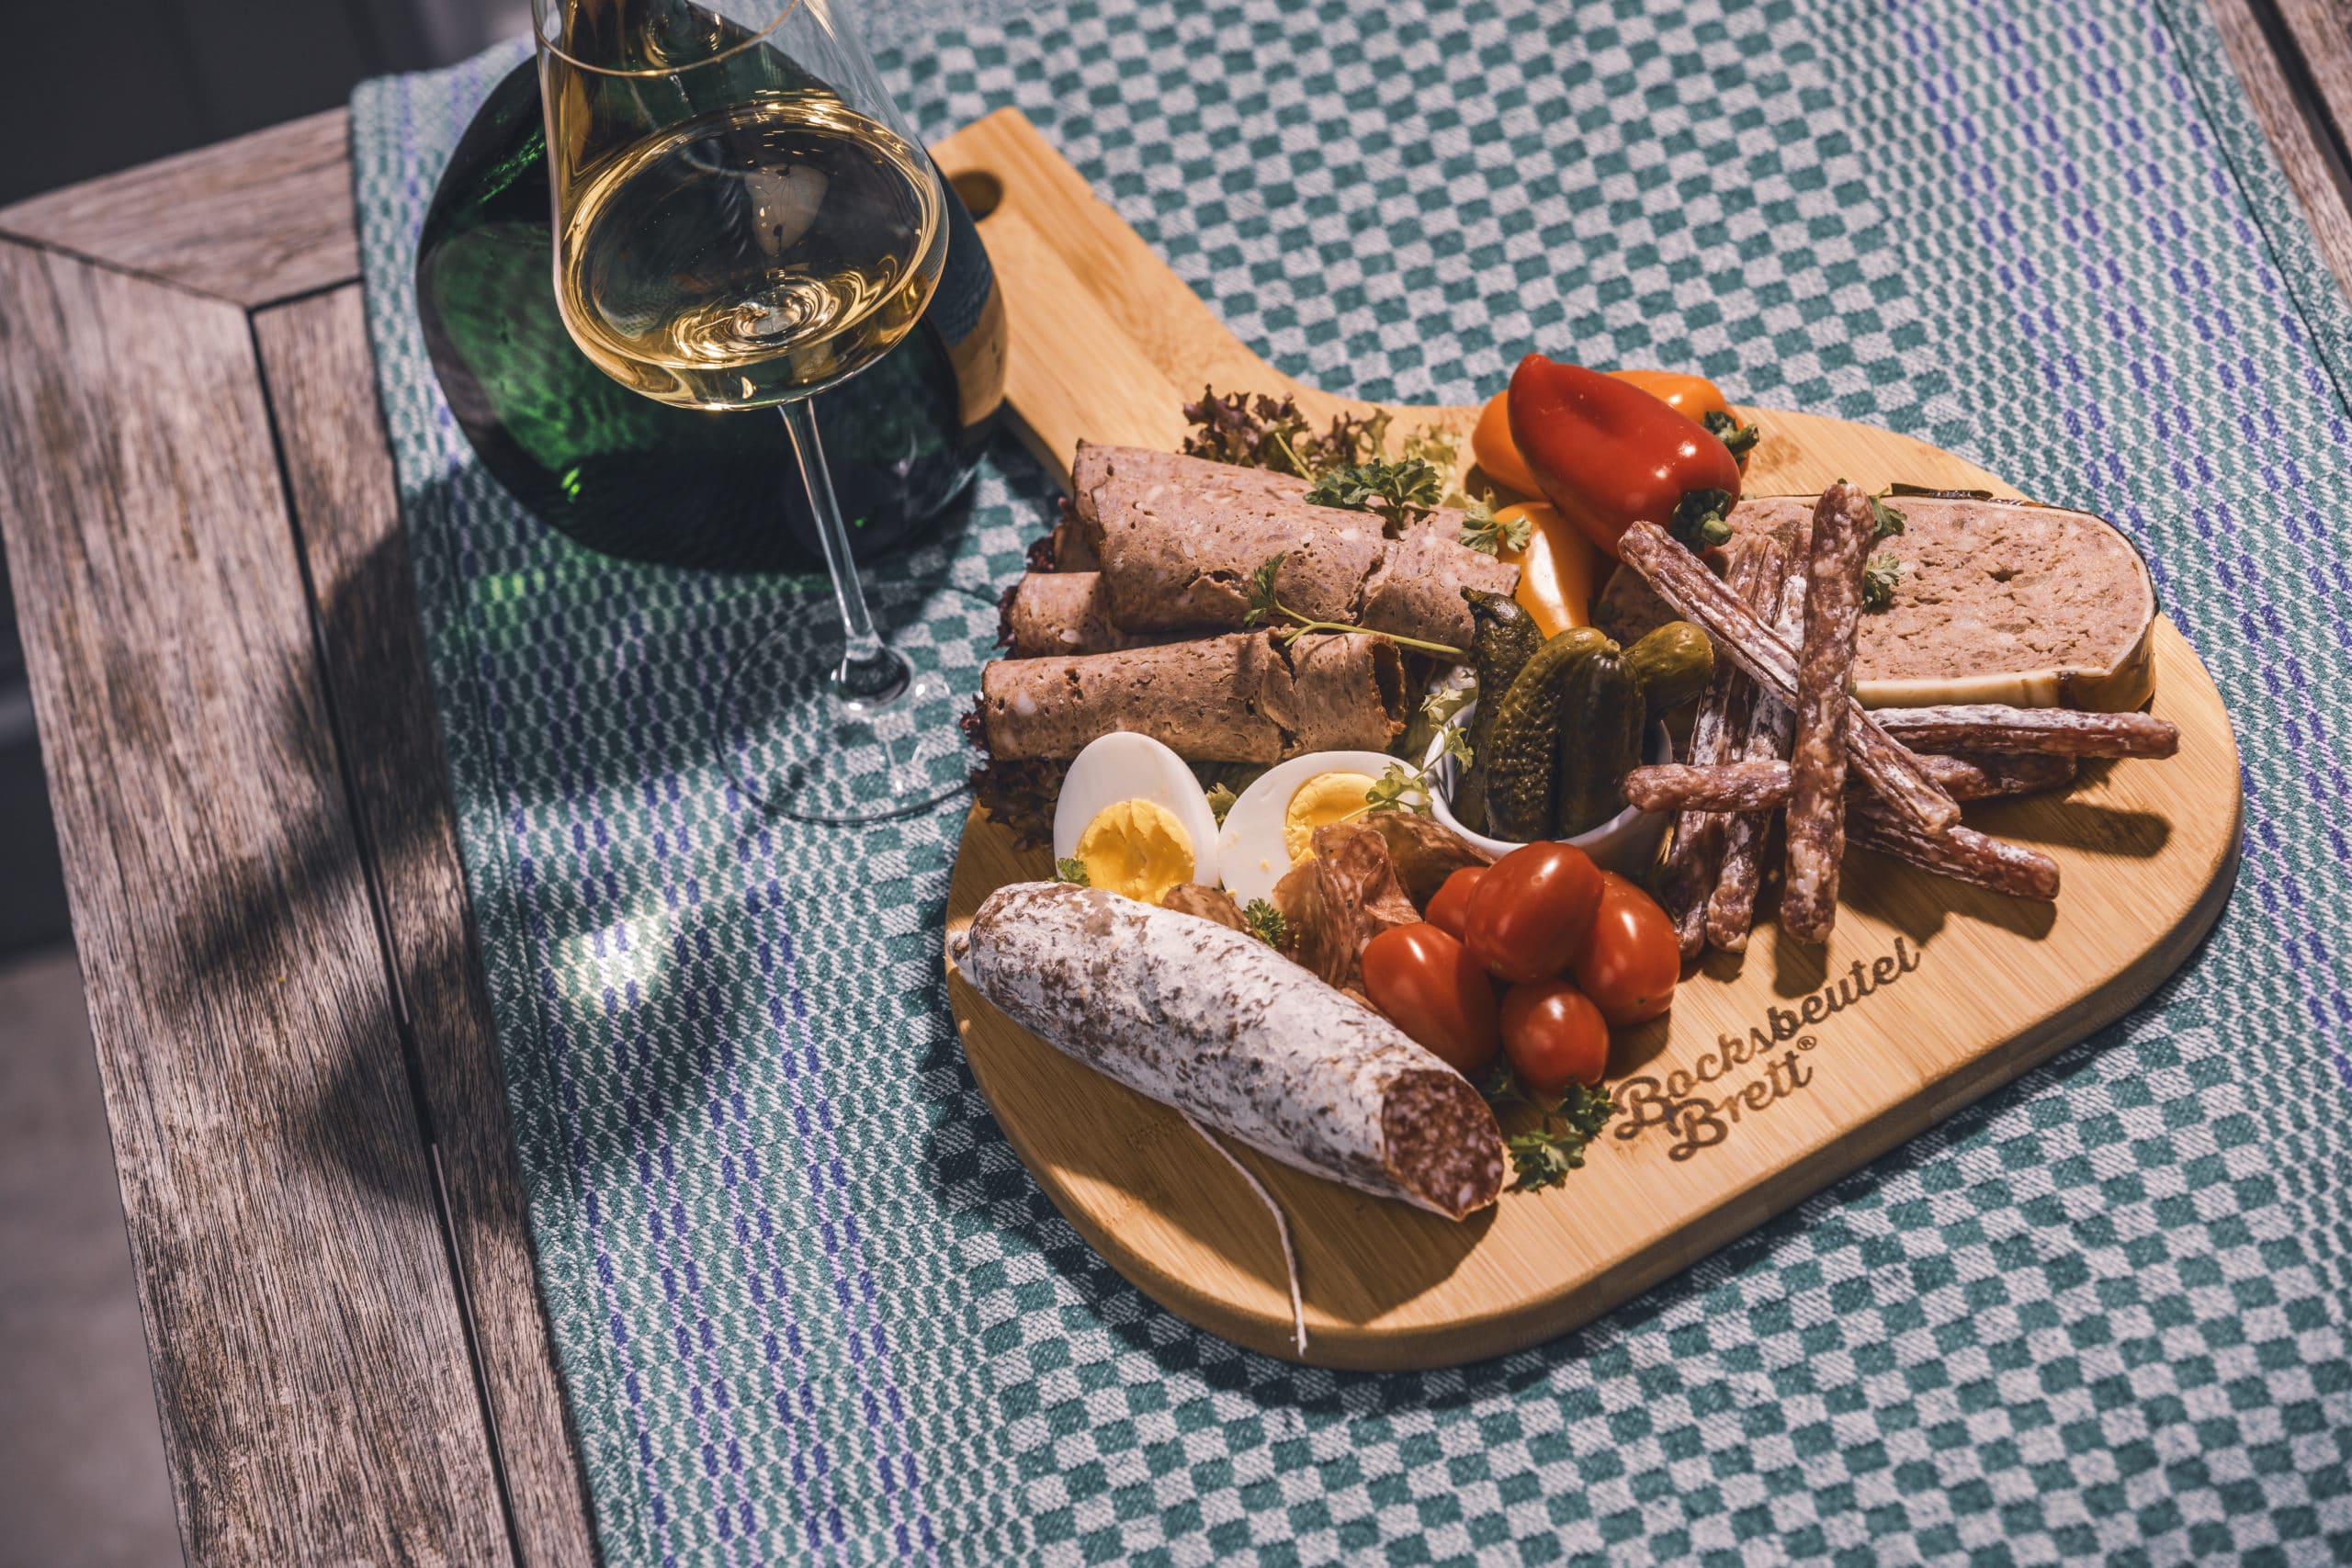 Eine fränkische Brotzeit mit Wurst und Wein serviert auf dem Bocksbeutelbrett.